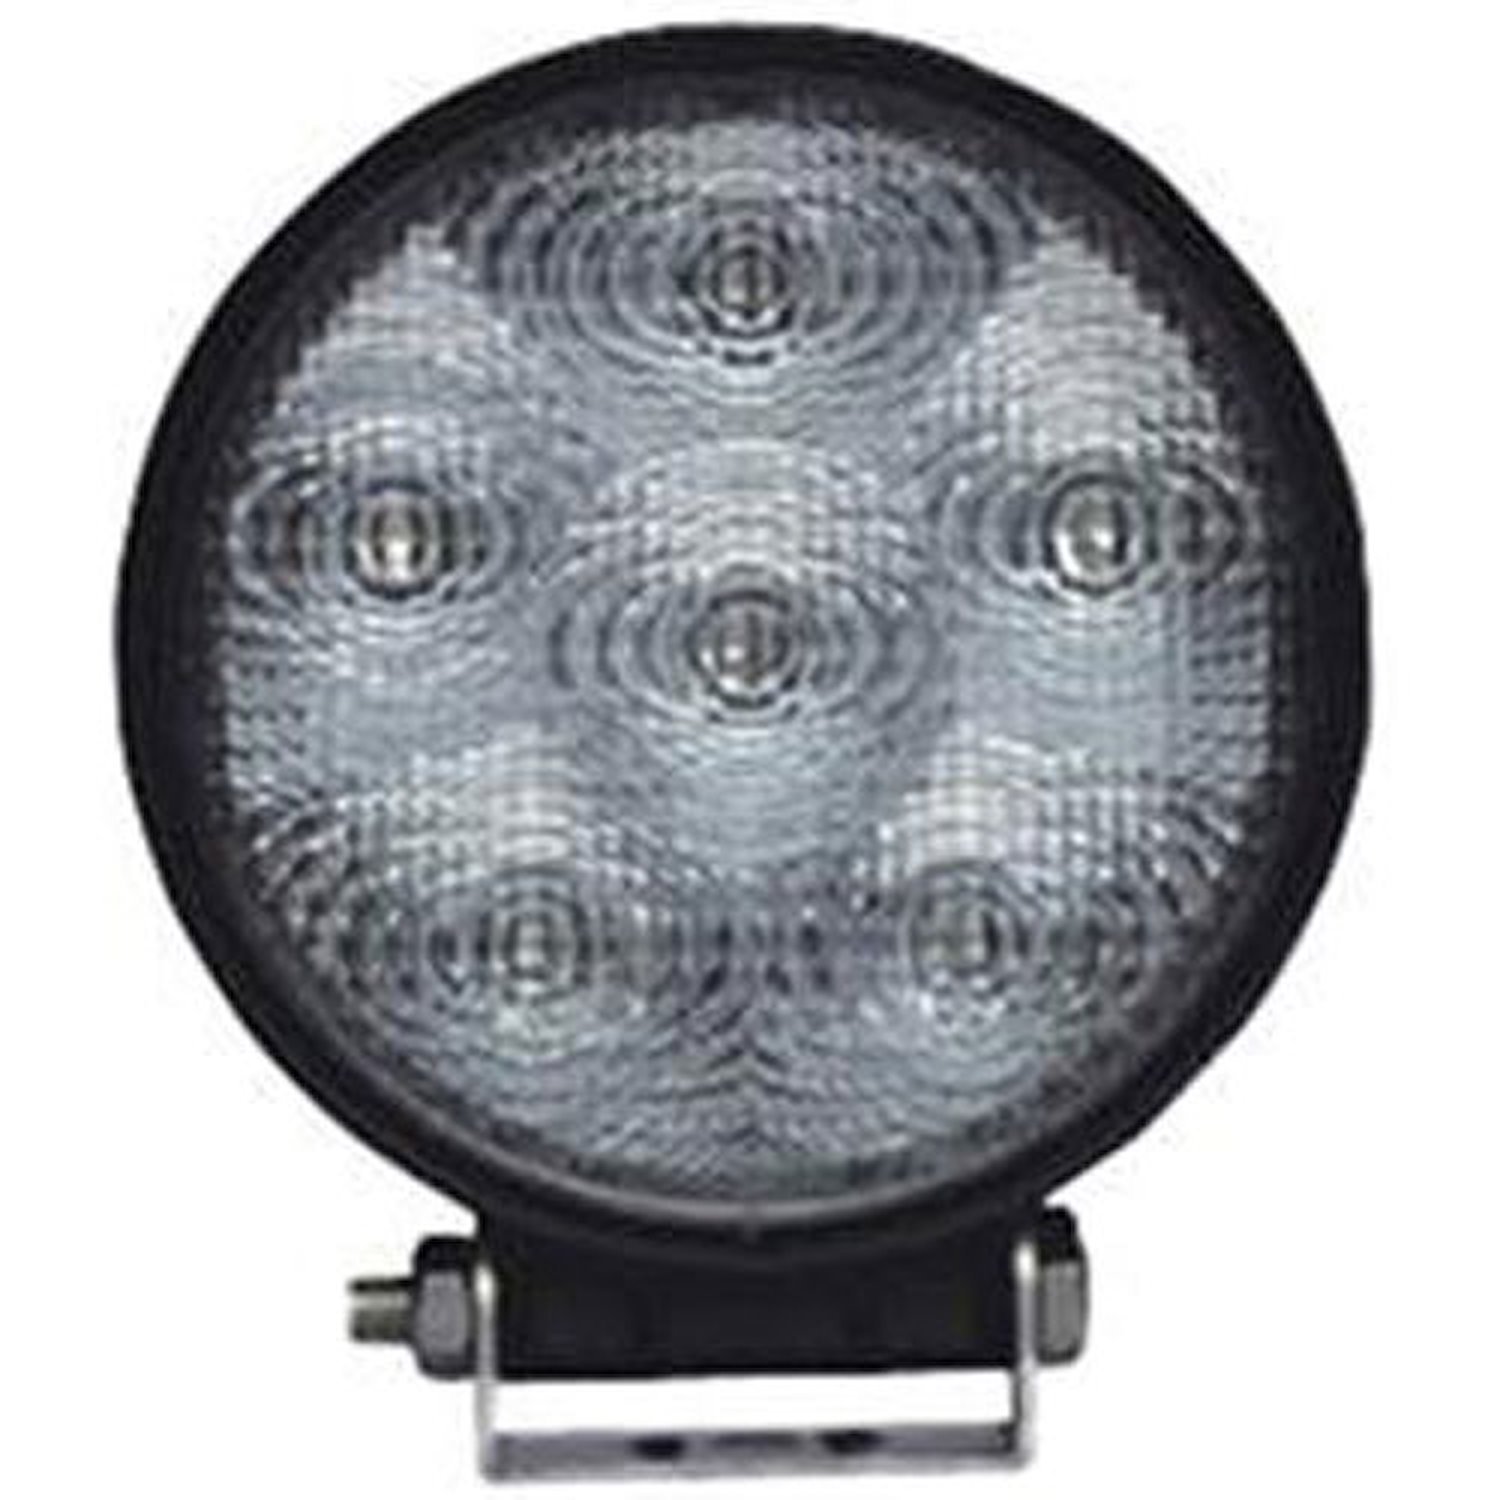 LED Utility Light 4.5" Round Case